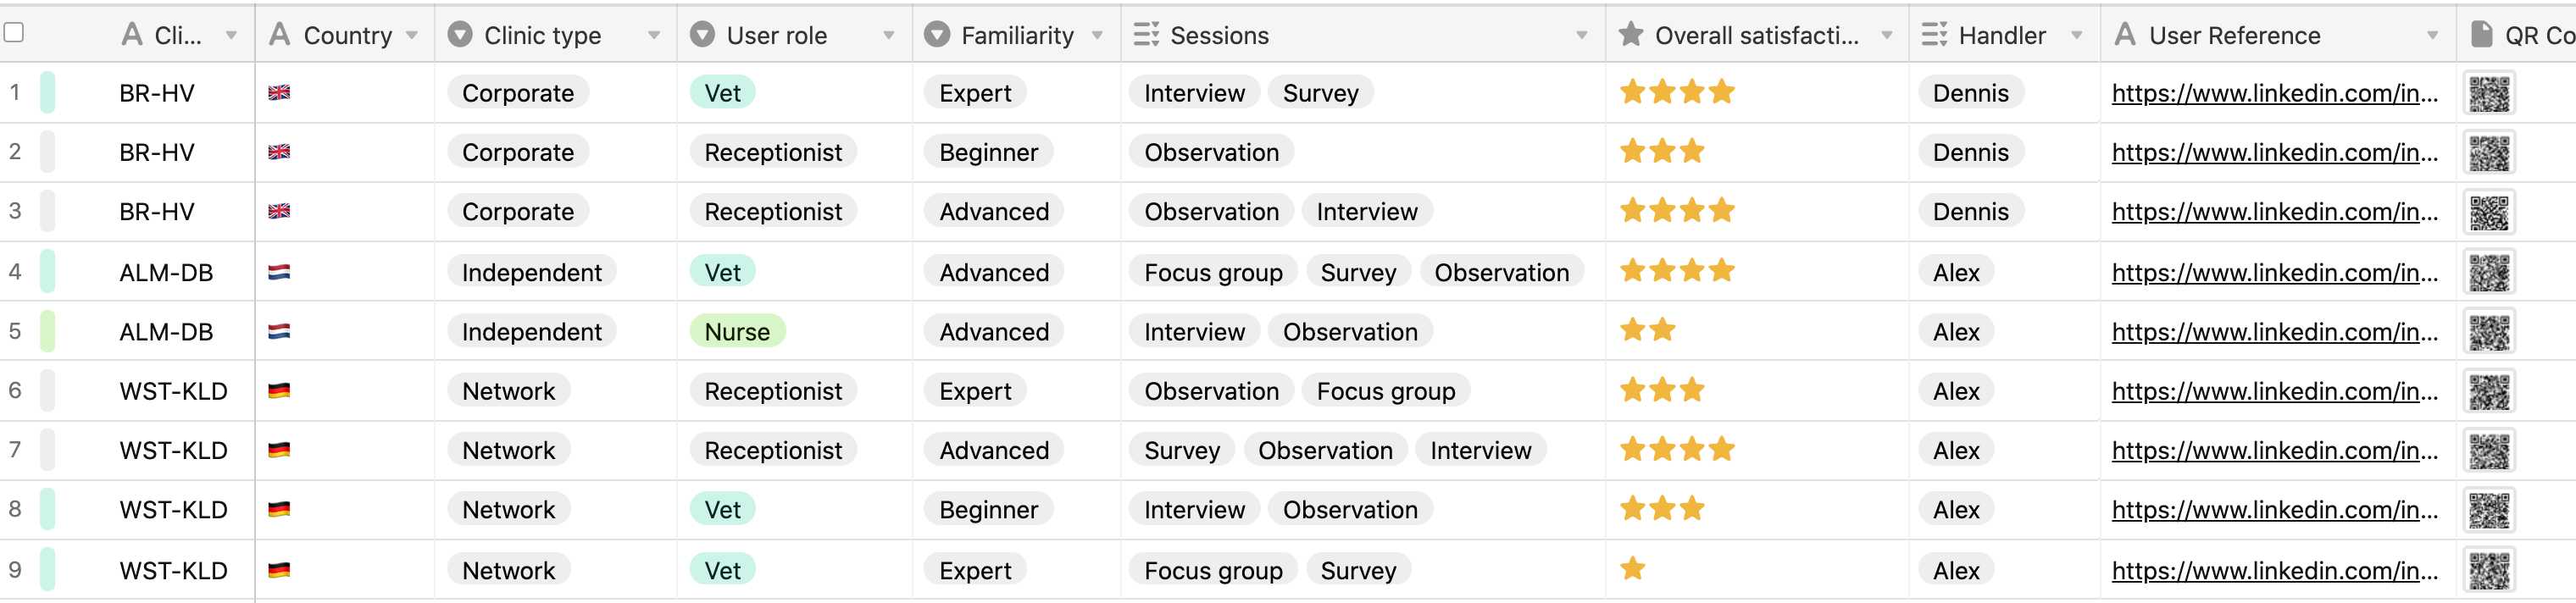 Tabla con 10 columnas que muestran los datos del estudio de investigación de usuarios